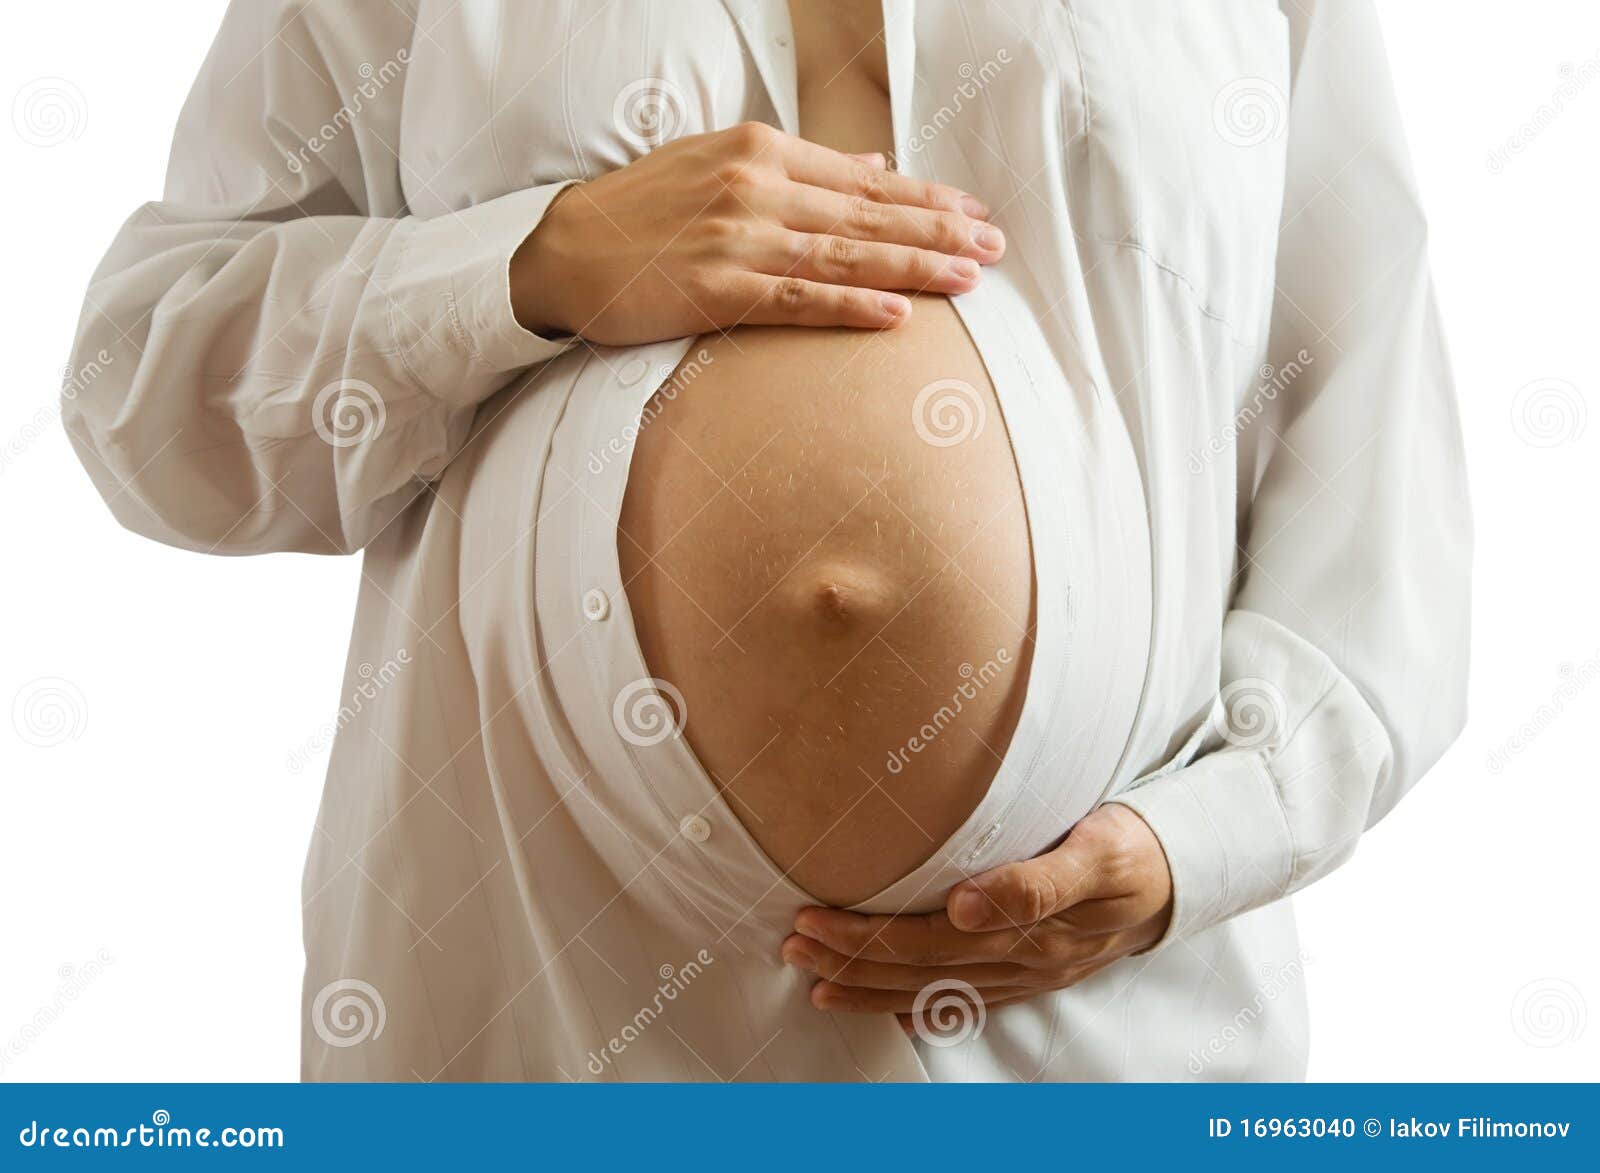 Выделяется из груди при беременности